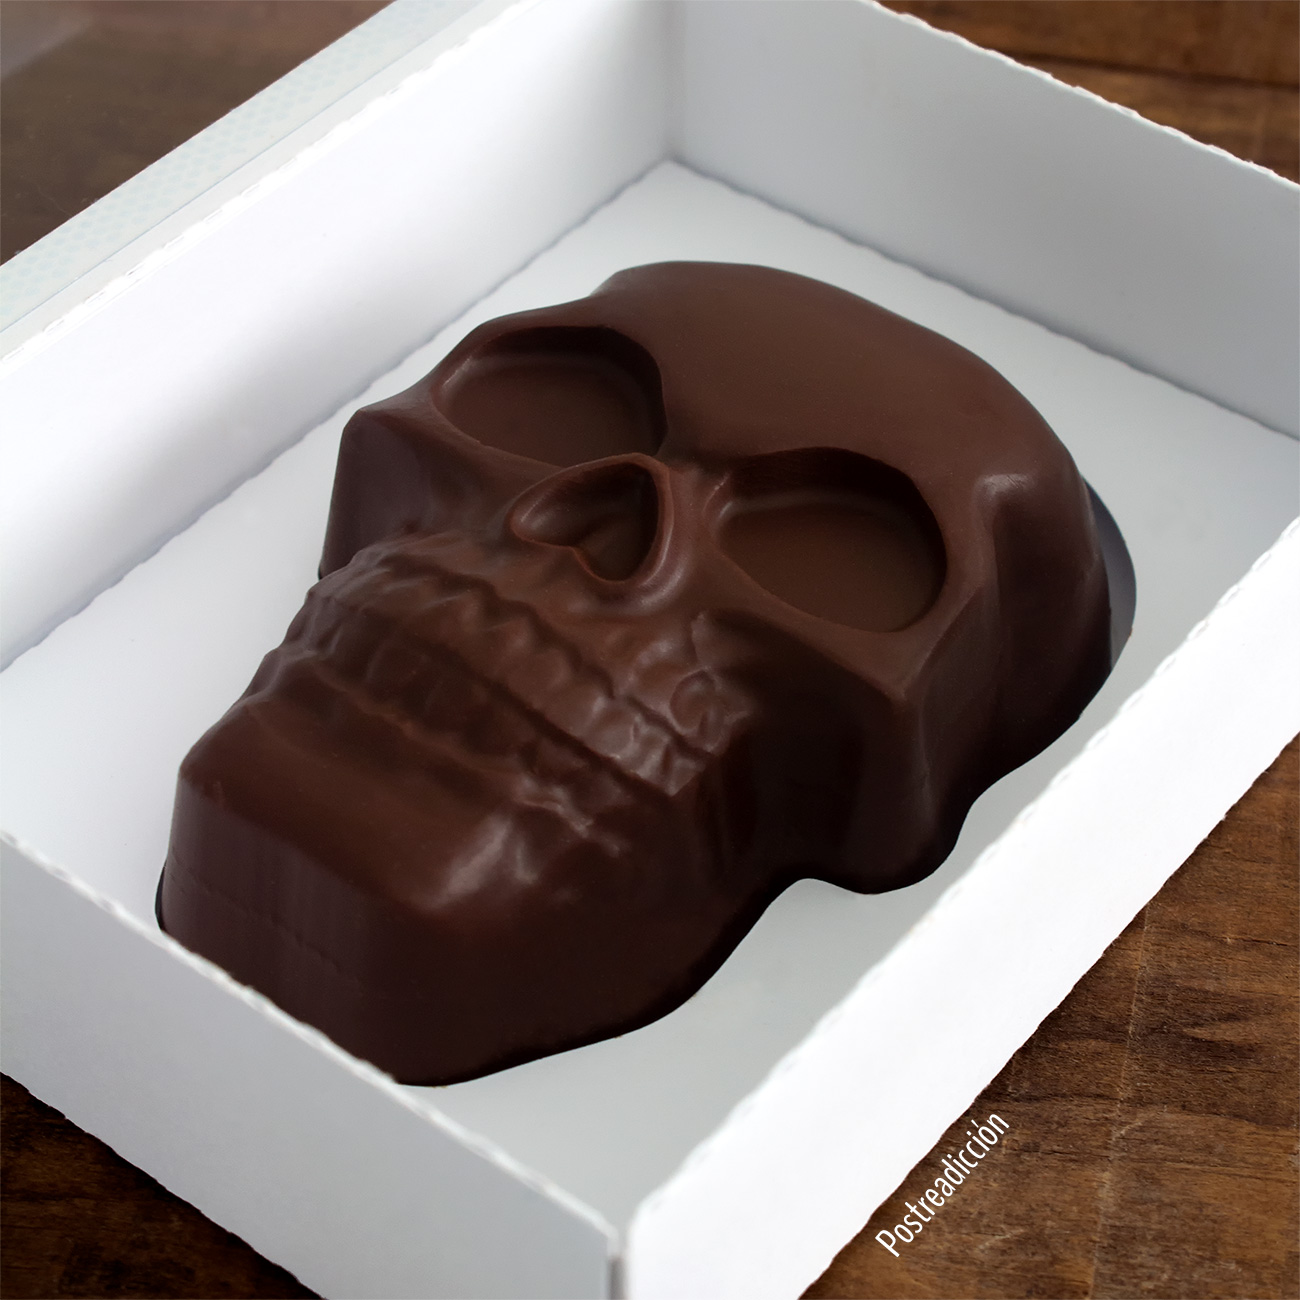 Imagen de producto: https://tienda.postreadiccion.com/img/articulos/secundarias13358-bolsa-25-kg-chocolate-70-valor-en-gotas-1.jpg